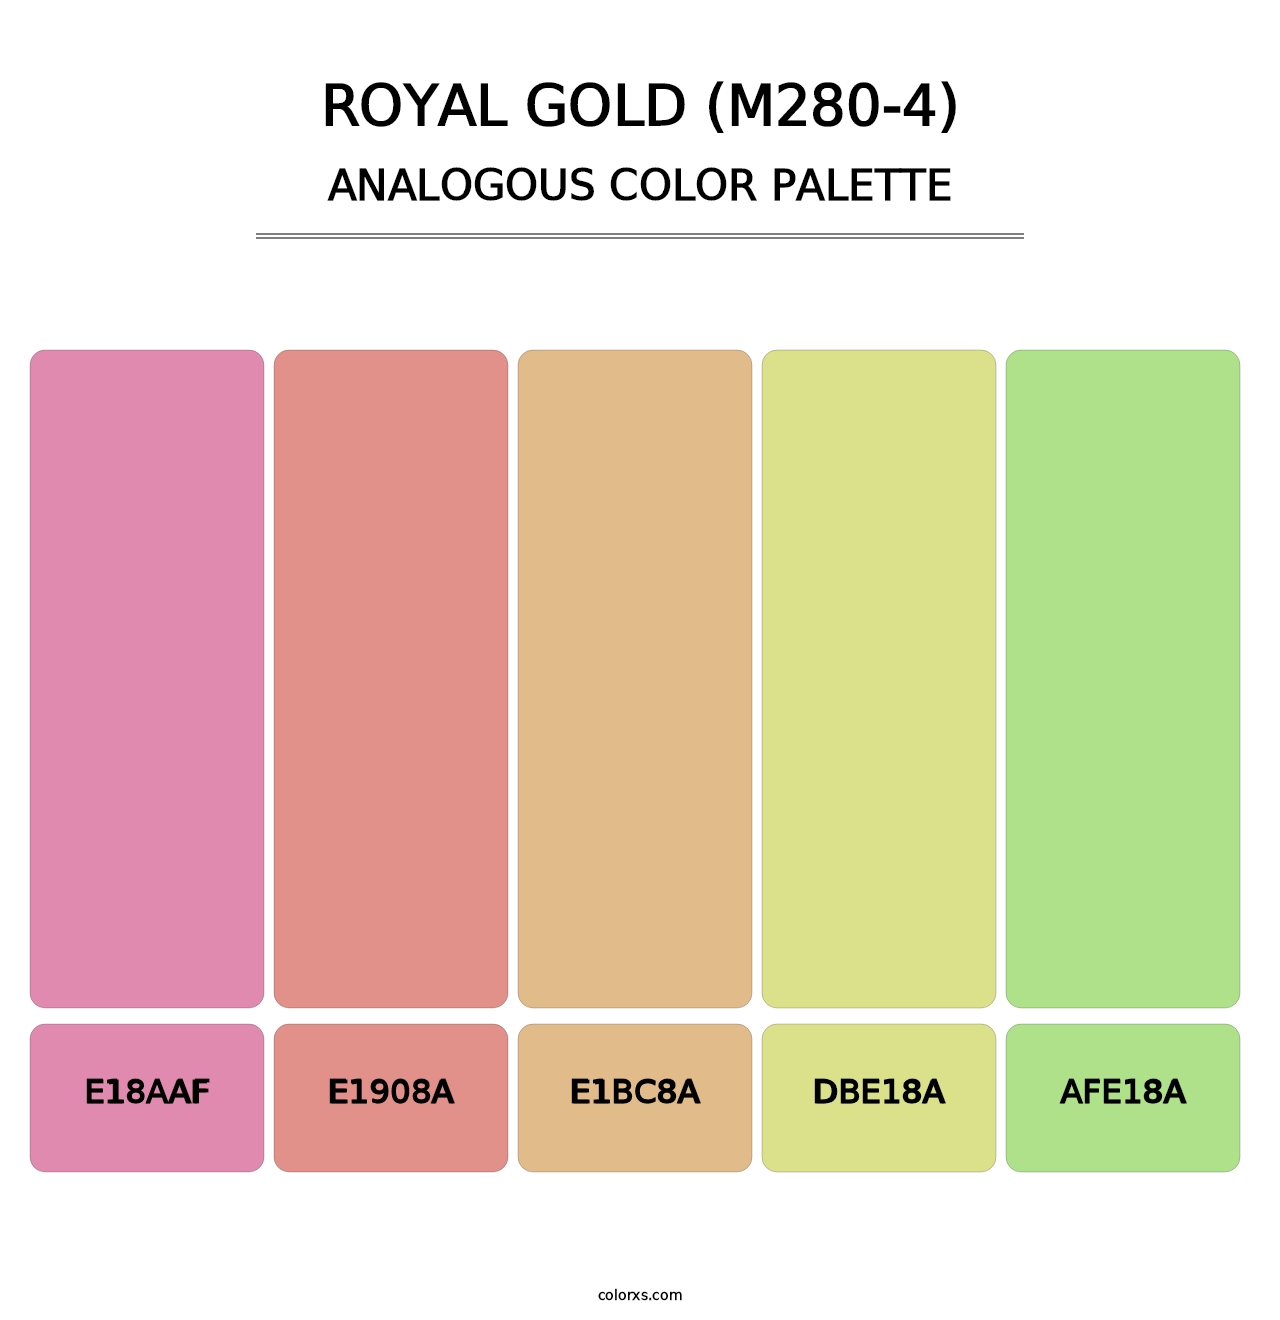 Royal Gold (M280-4) - Analogous Color Palette